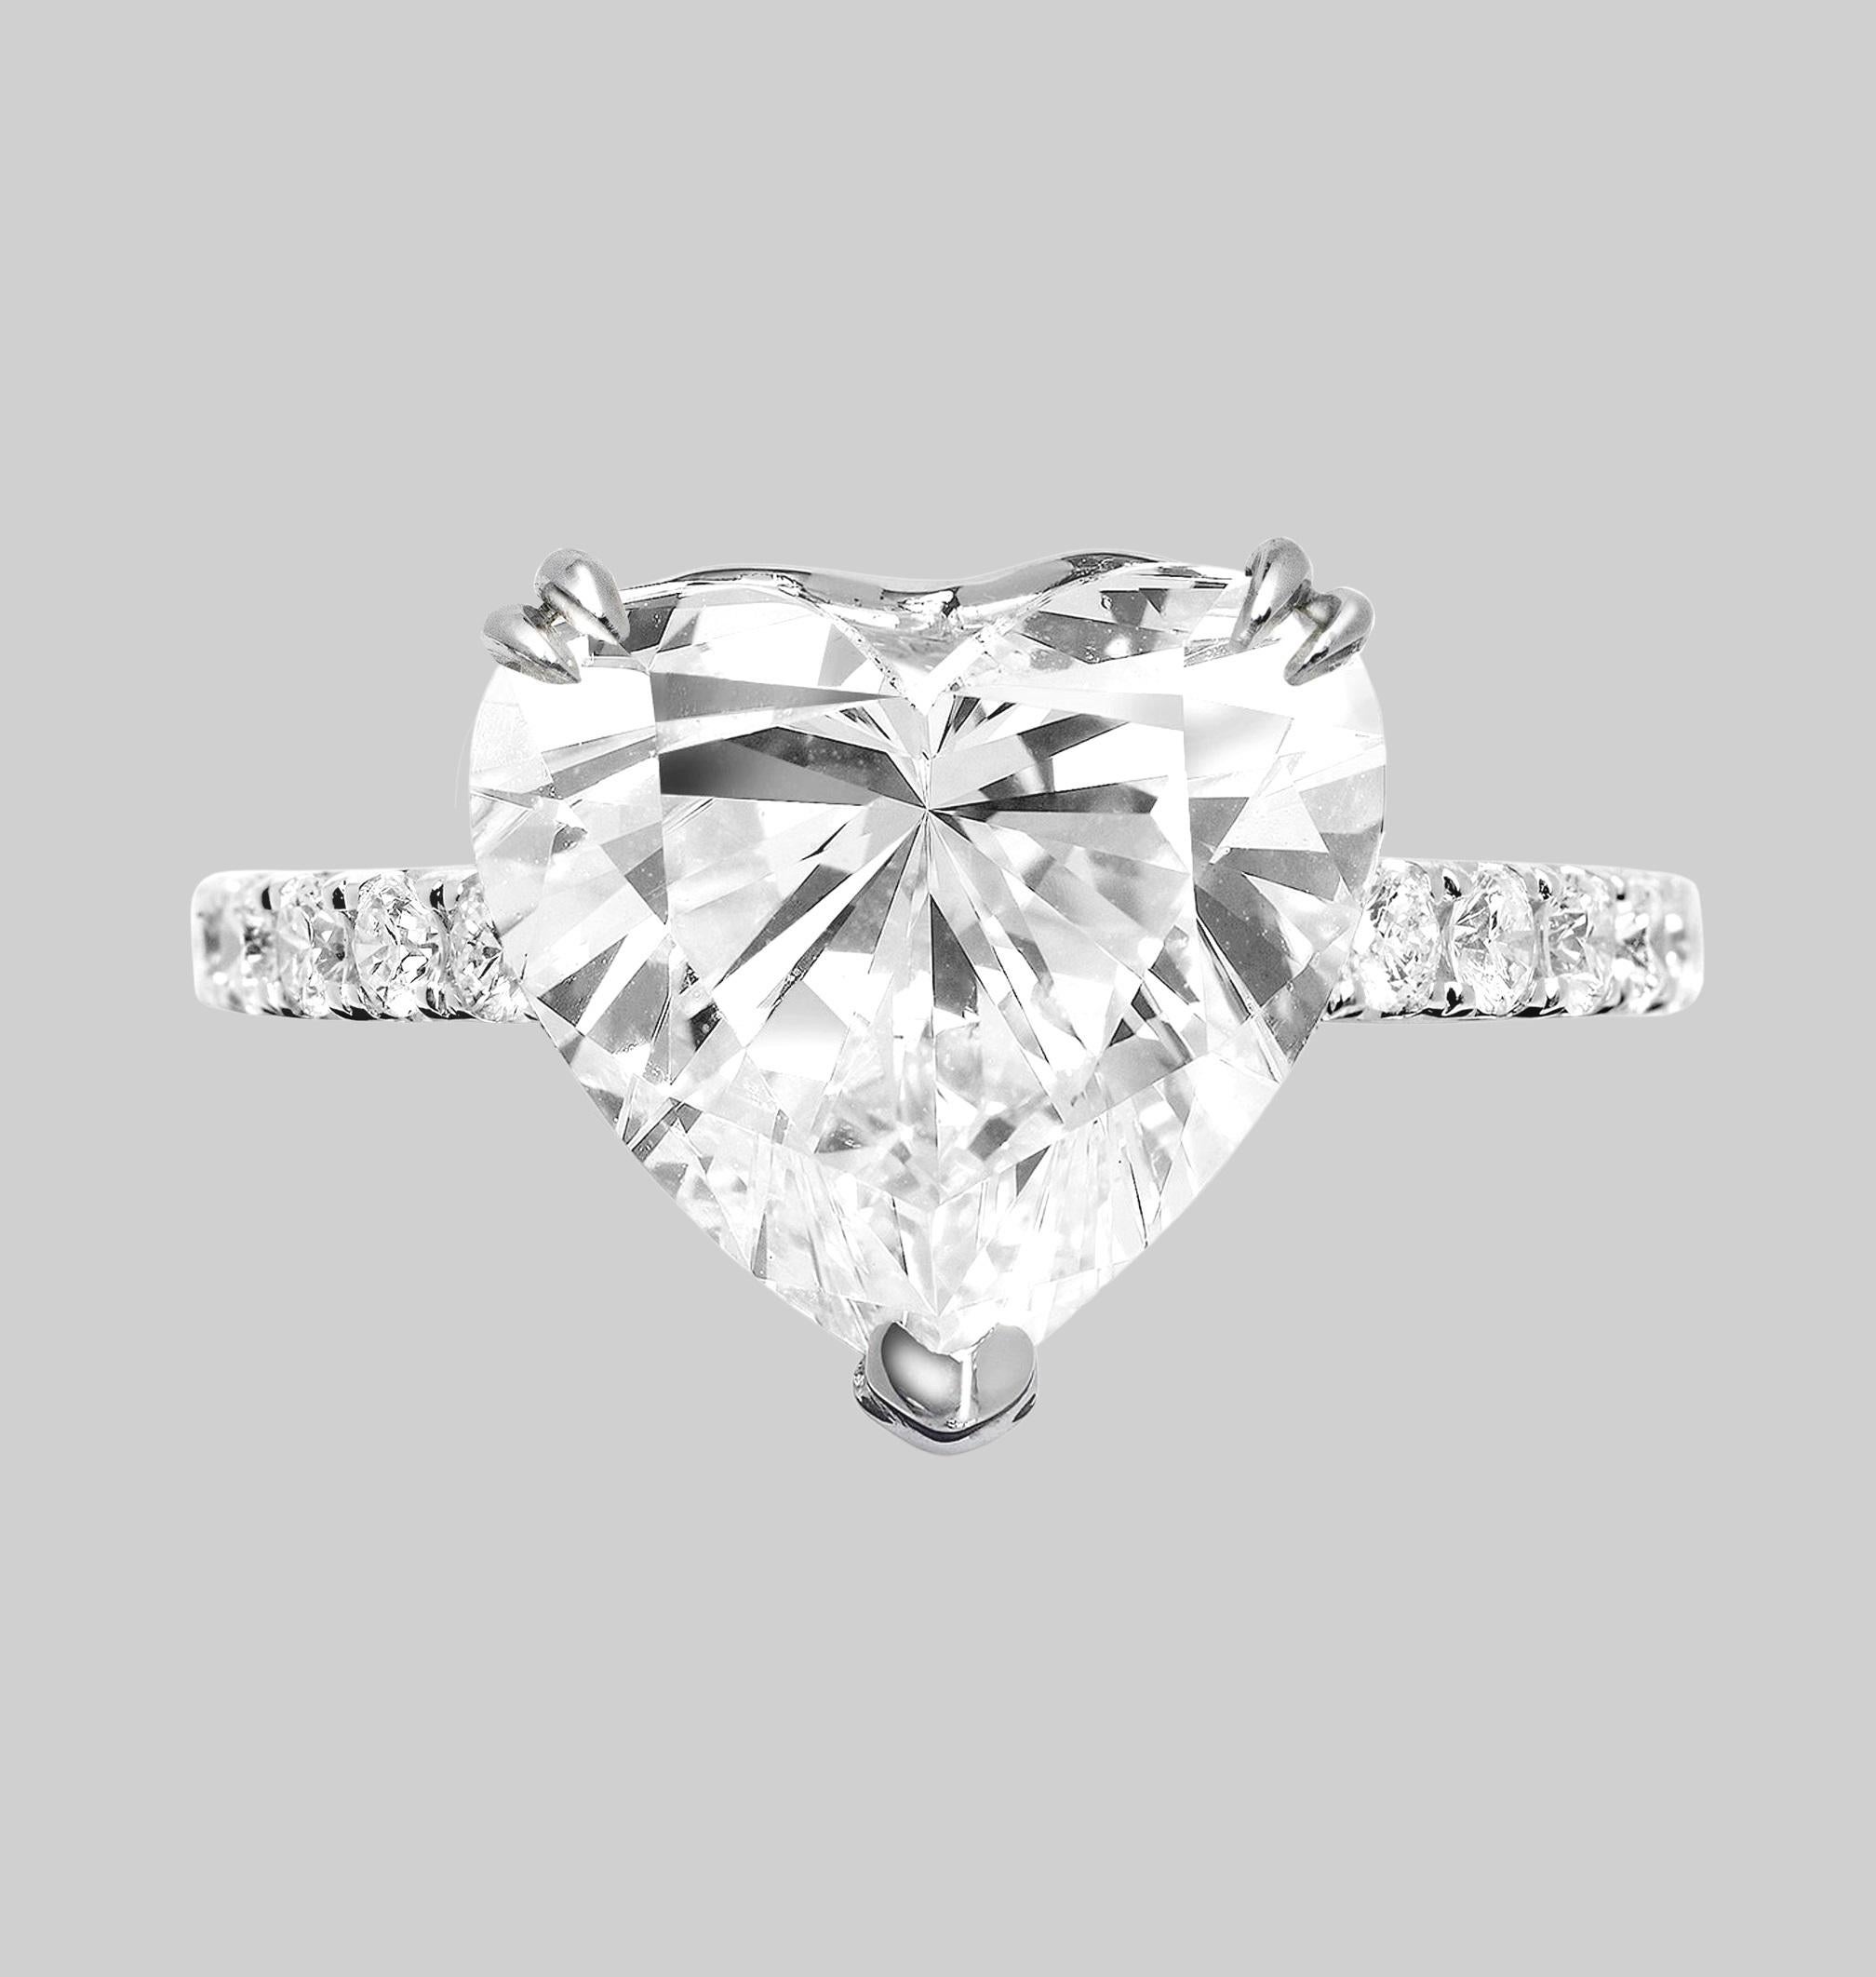 Un diamant exquis de 3 carats, certifié par le GIA, d'une pureté sans faille interne, le plus haut degré de pureté, et d'une couleur e, pratiquement la meilleure que l'on puisse obtenir.


Les diamants de ce type sont considérés comme des